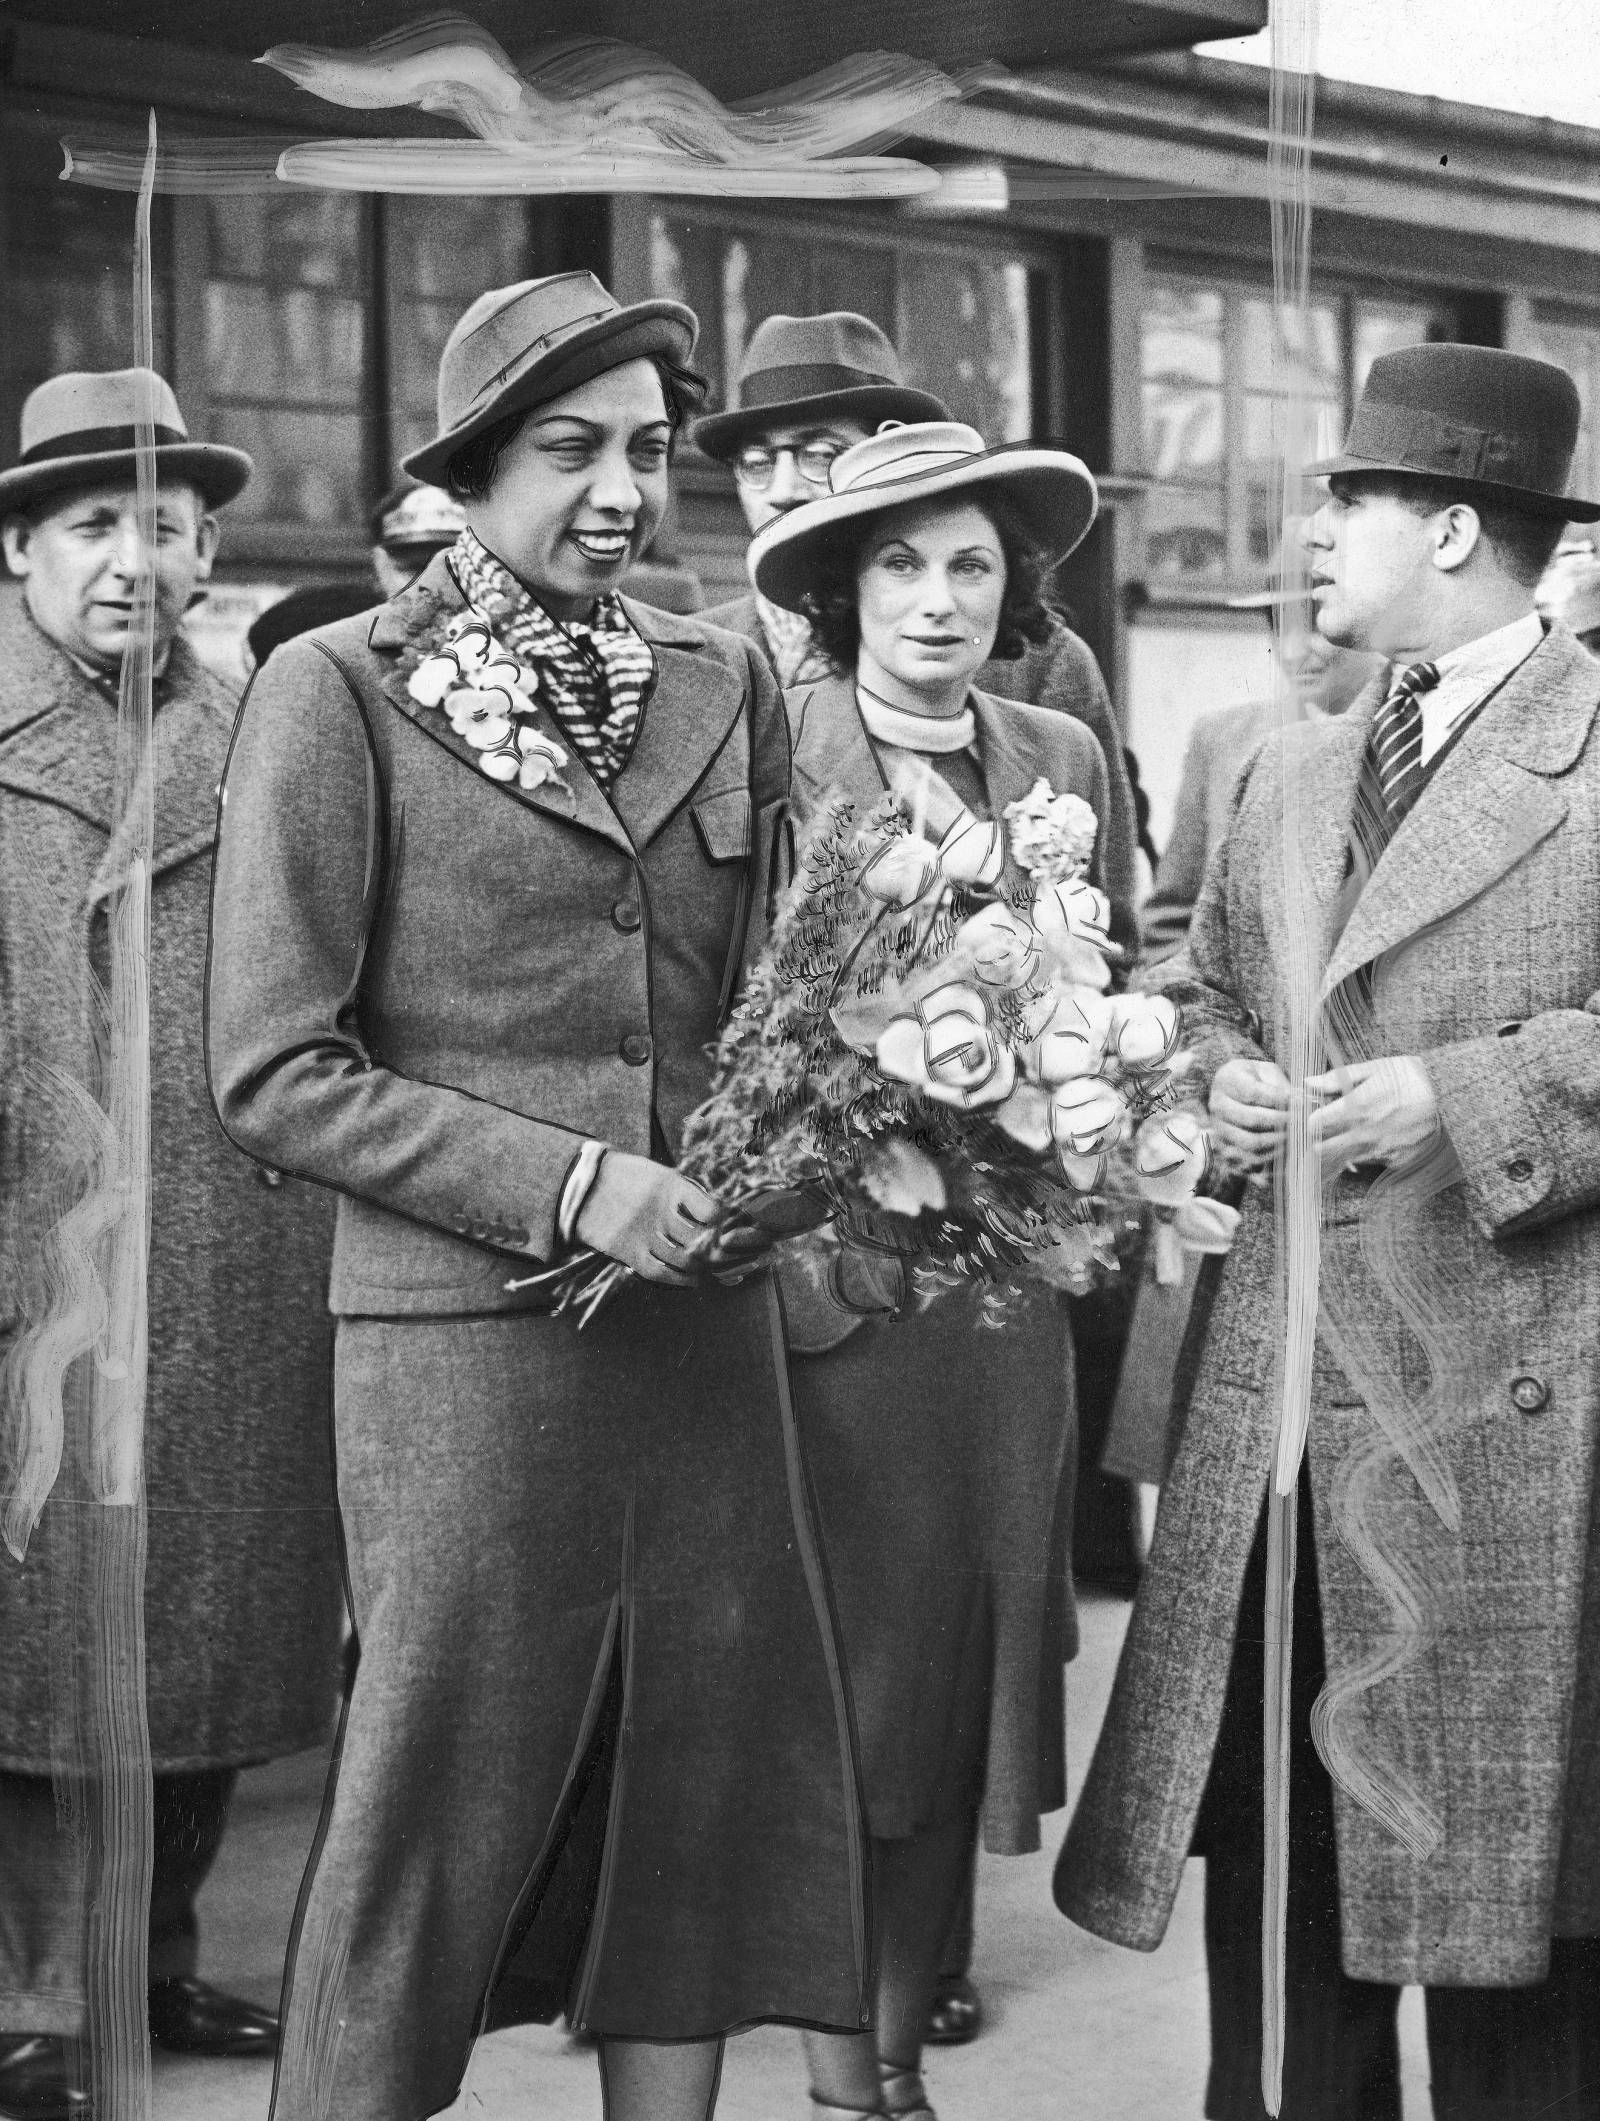 Fot. Powitanie Josephine Baker na dworcu w Warszawie, 1938 (Narodowe Archiwum Cyfrowe)